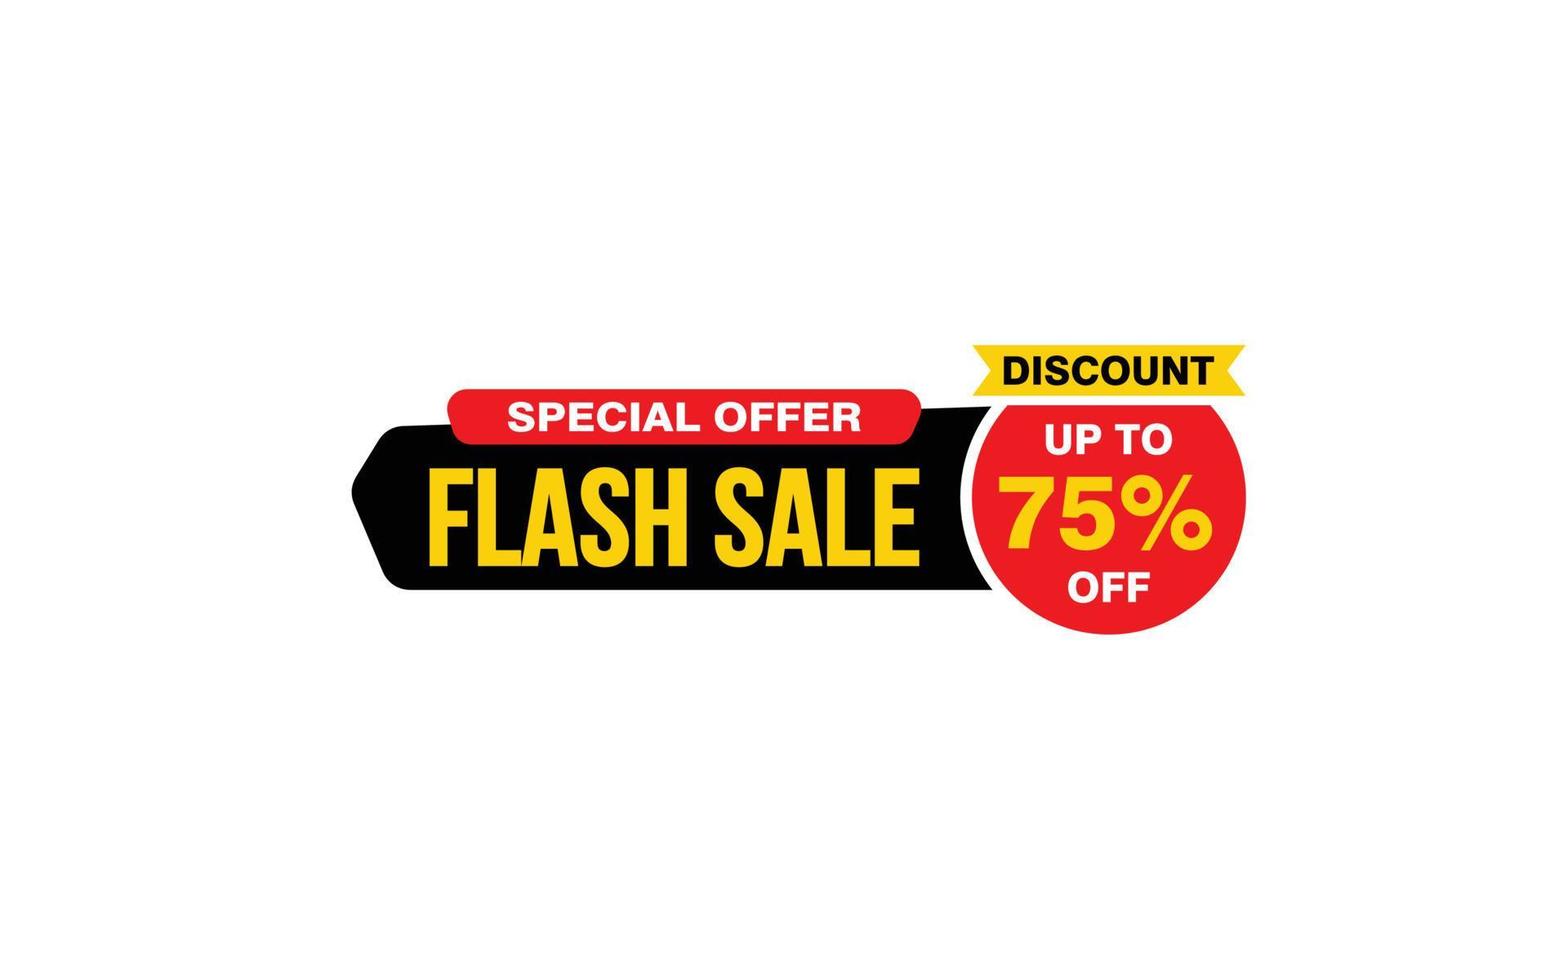 Oferta de venta flash del 75 por ciento, liquidación, diseño de banner de promoción con estilo de etiqueta. vector